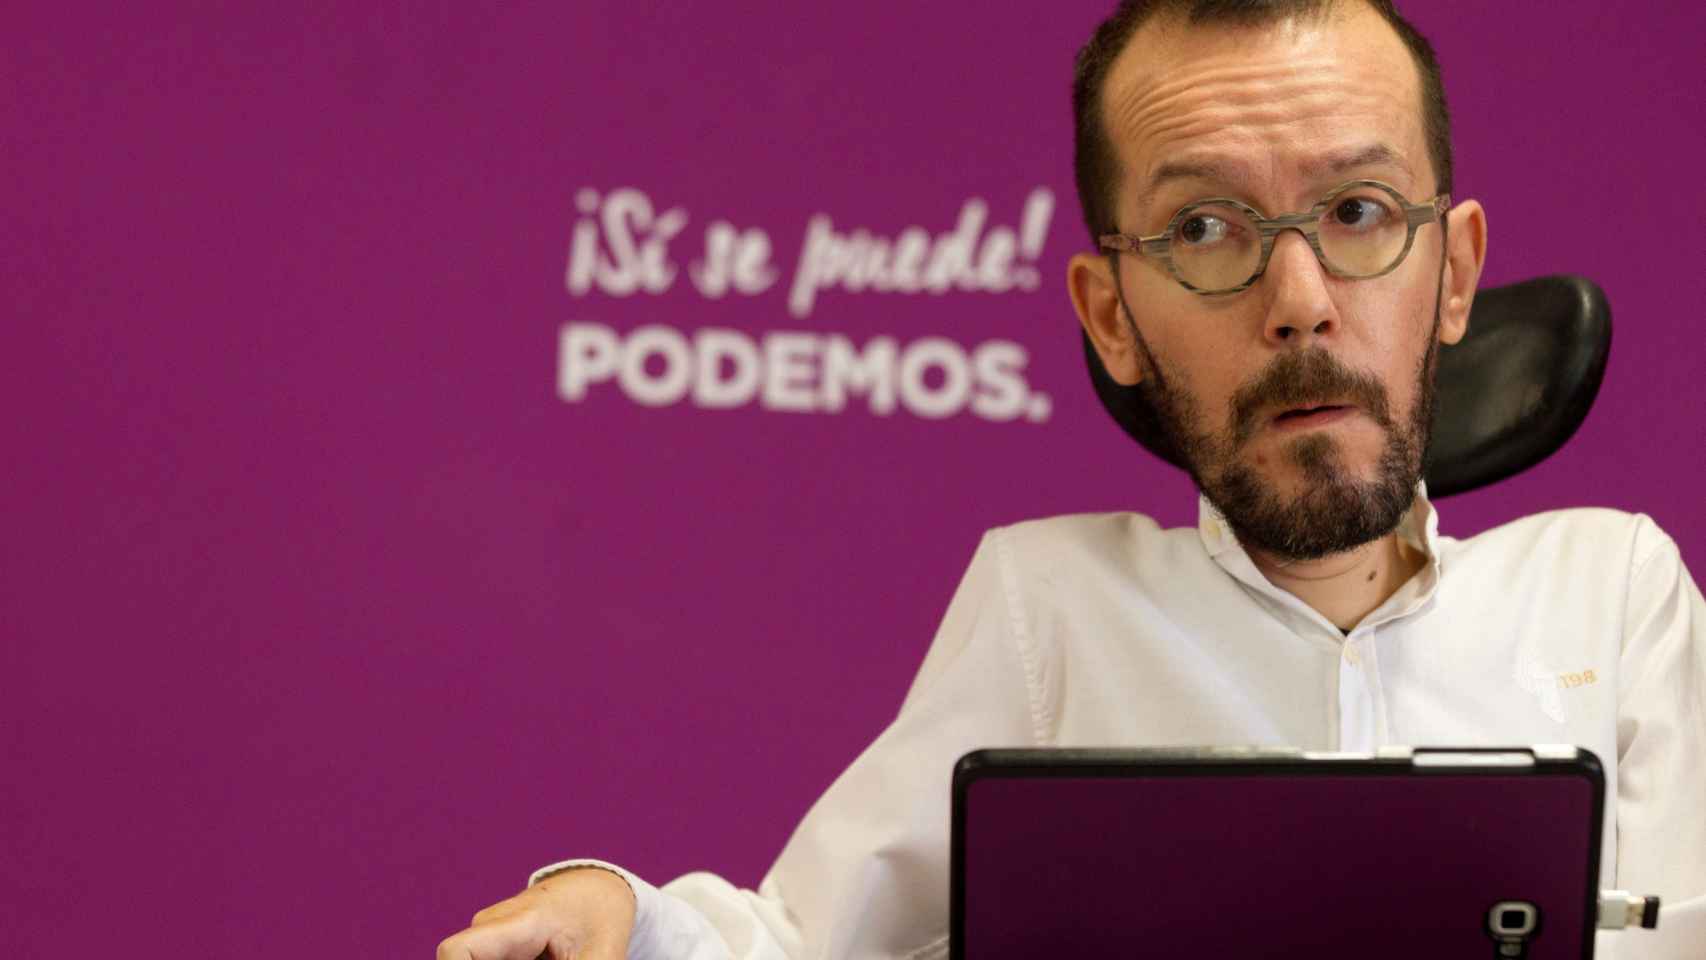 Pablo Echenique, diputado de Podemos.